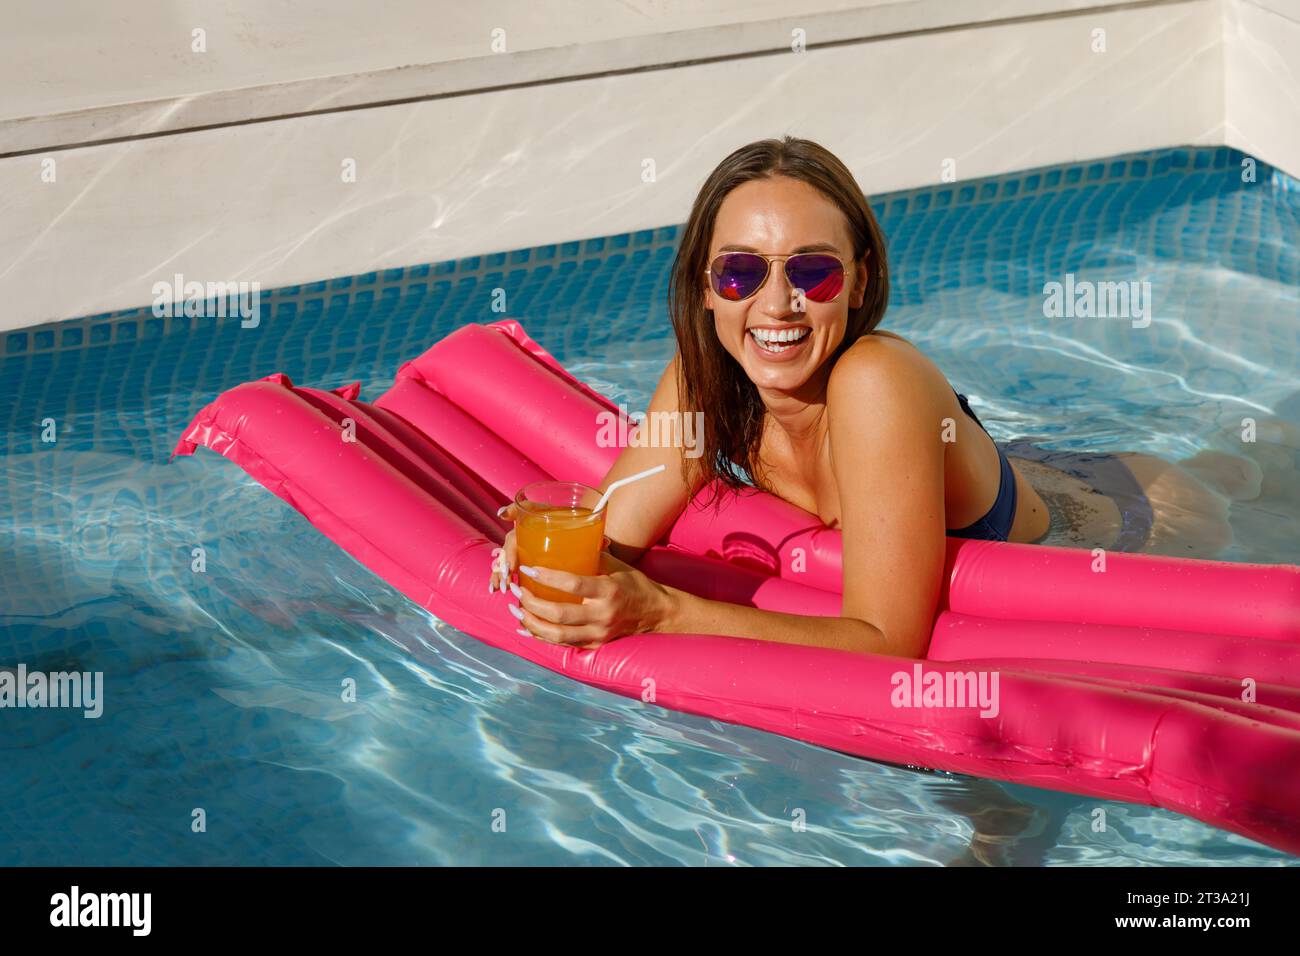 Eleganz am Pool: Wunderschöne Frau, die auf aufblasbarer Matratze liegt Stockfoto